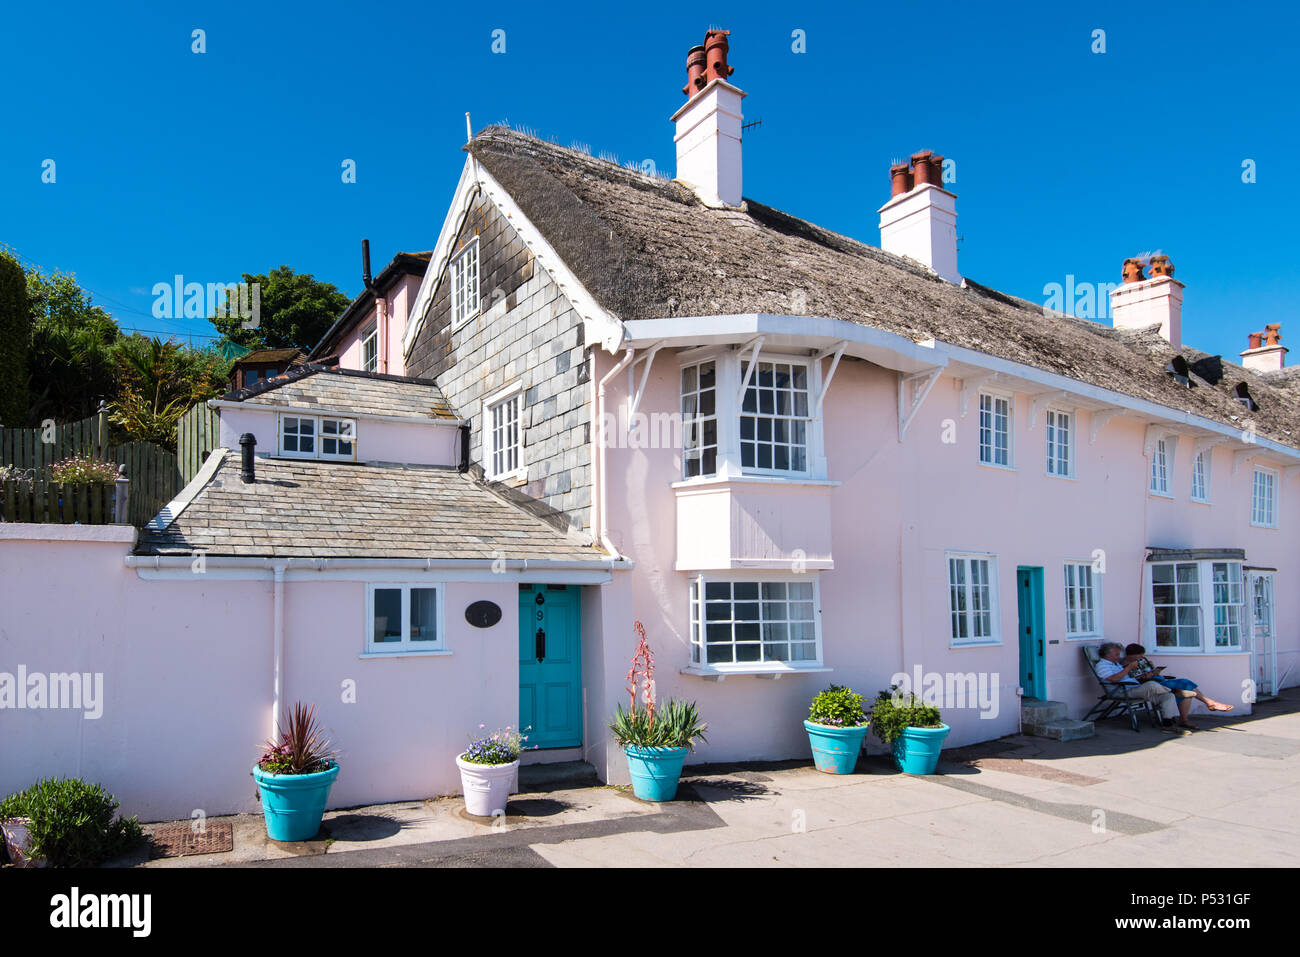 LyME REGIS, dans le Dorset, UK, 14Nov 2018 : Rose chaumière sur le front de mer à Lyme Regis. Banque D'Images